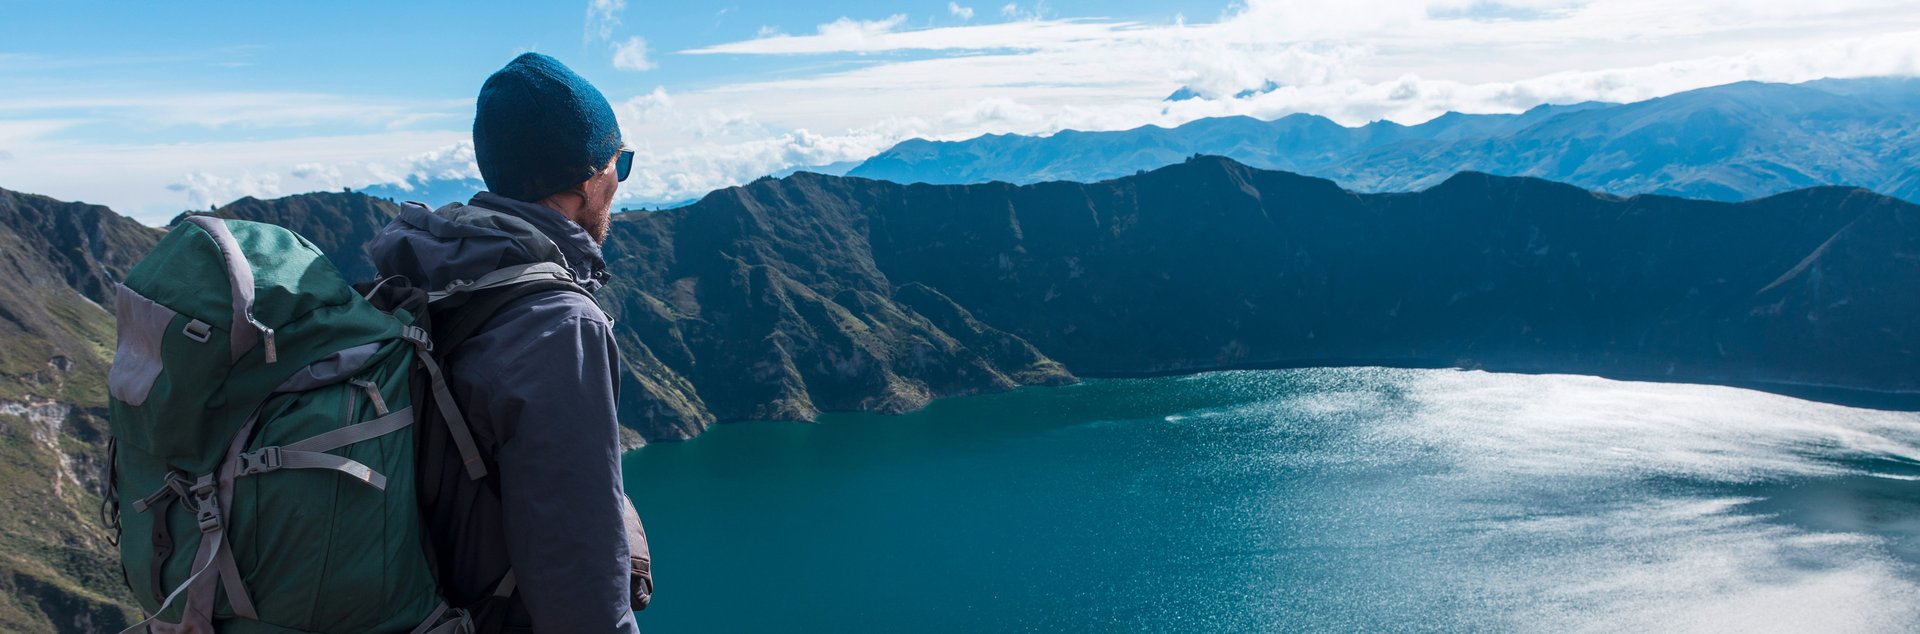 Ein Mann blickt von oben auf einen Bergsee